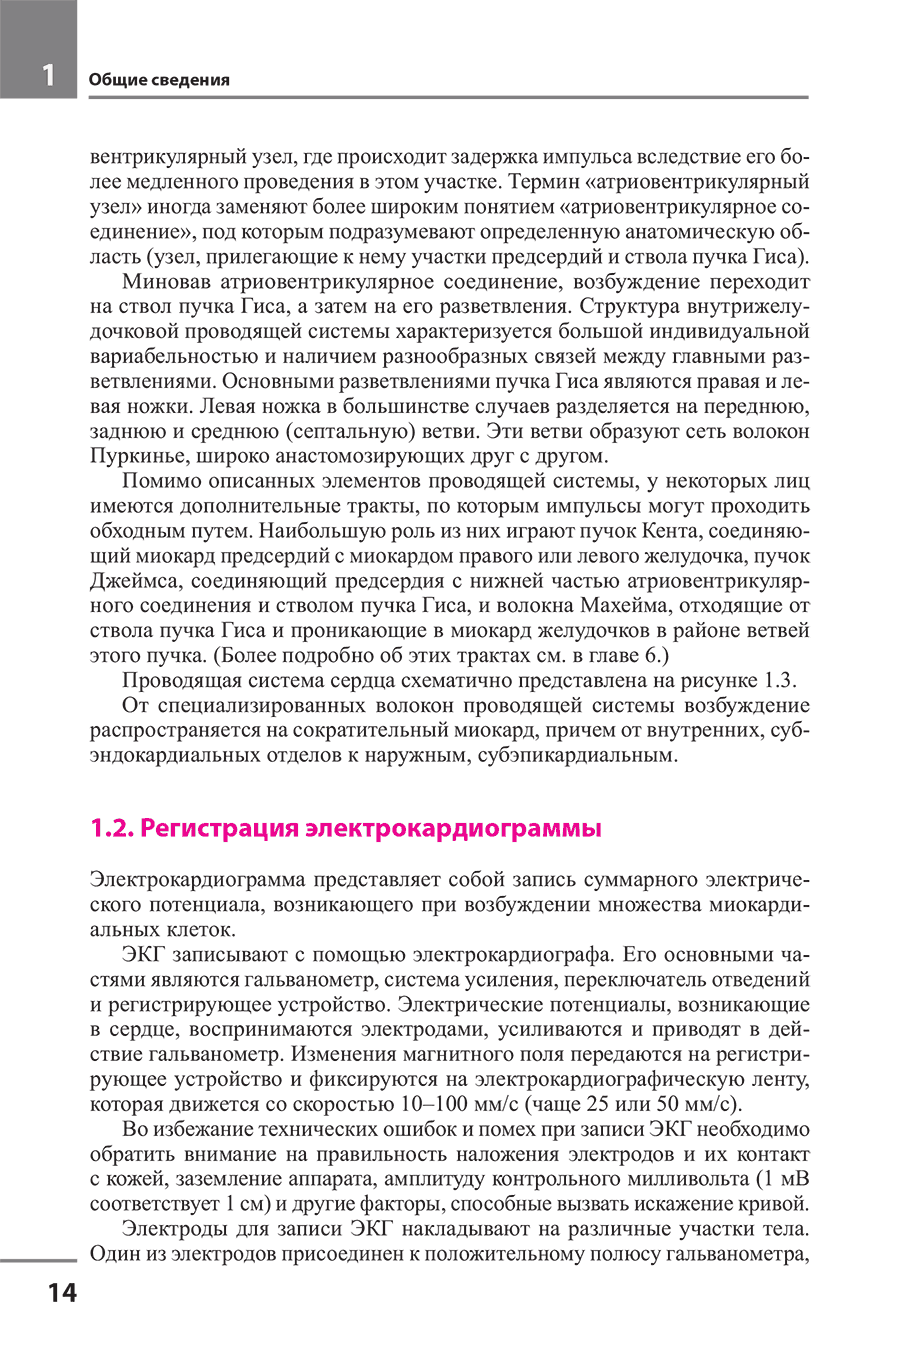 Пример страницы из книги "Руководство по практической электрокардиографии" - Дощицин В. Л.